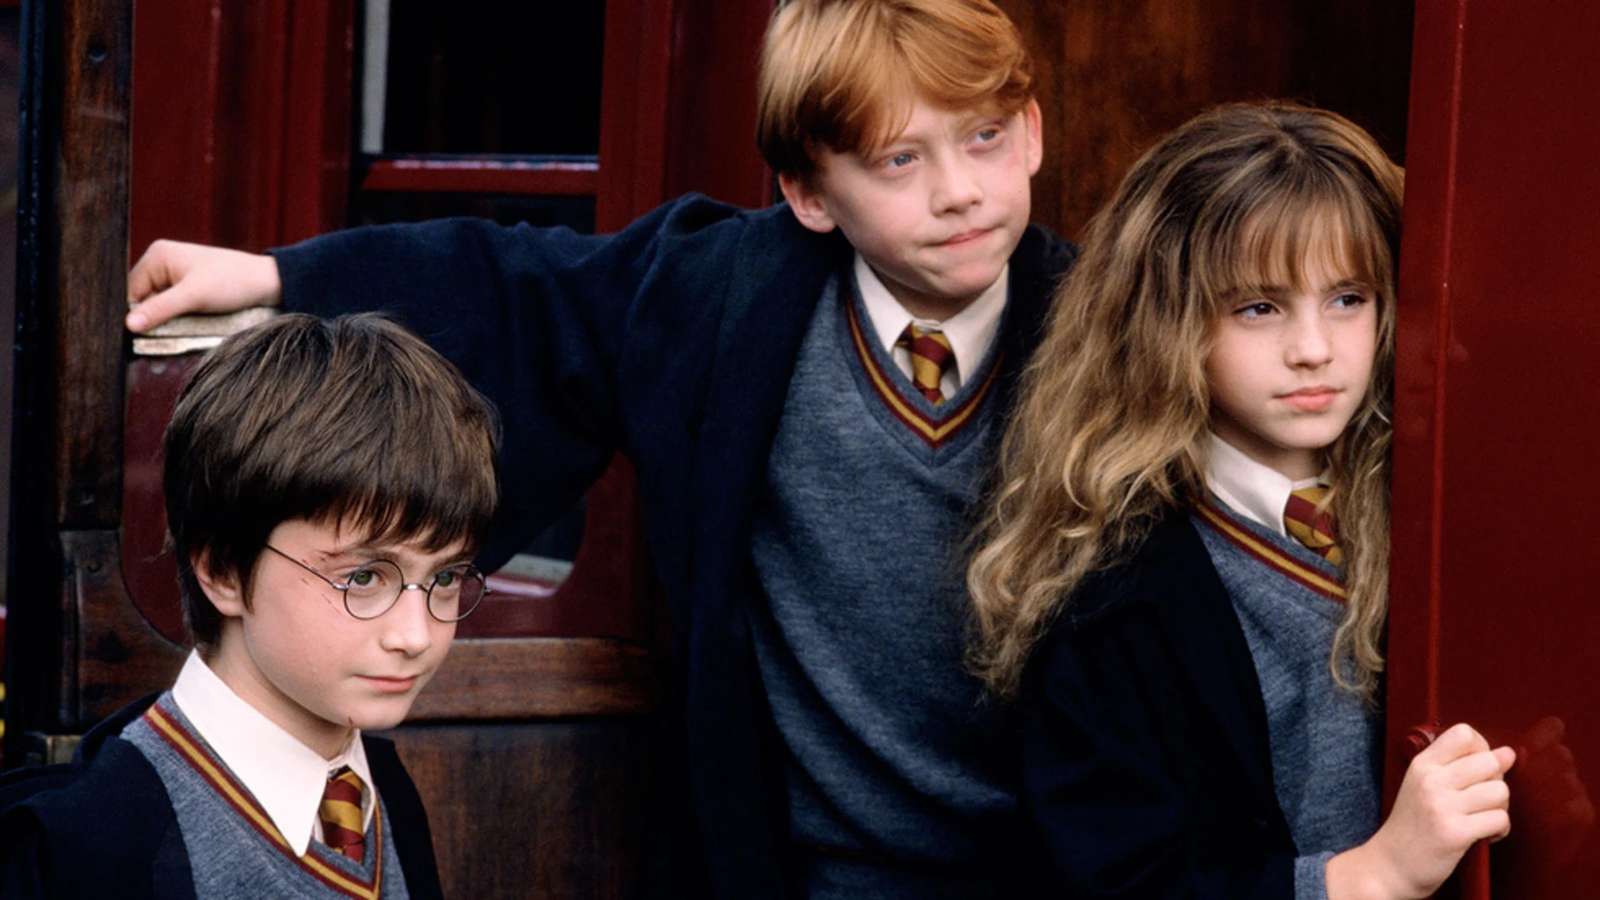 Harry Potter rejtvény online puzzle